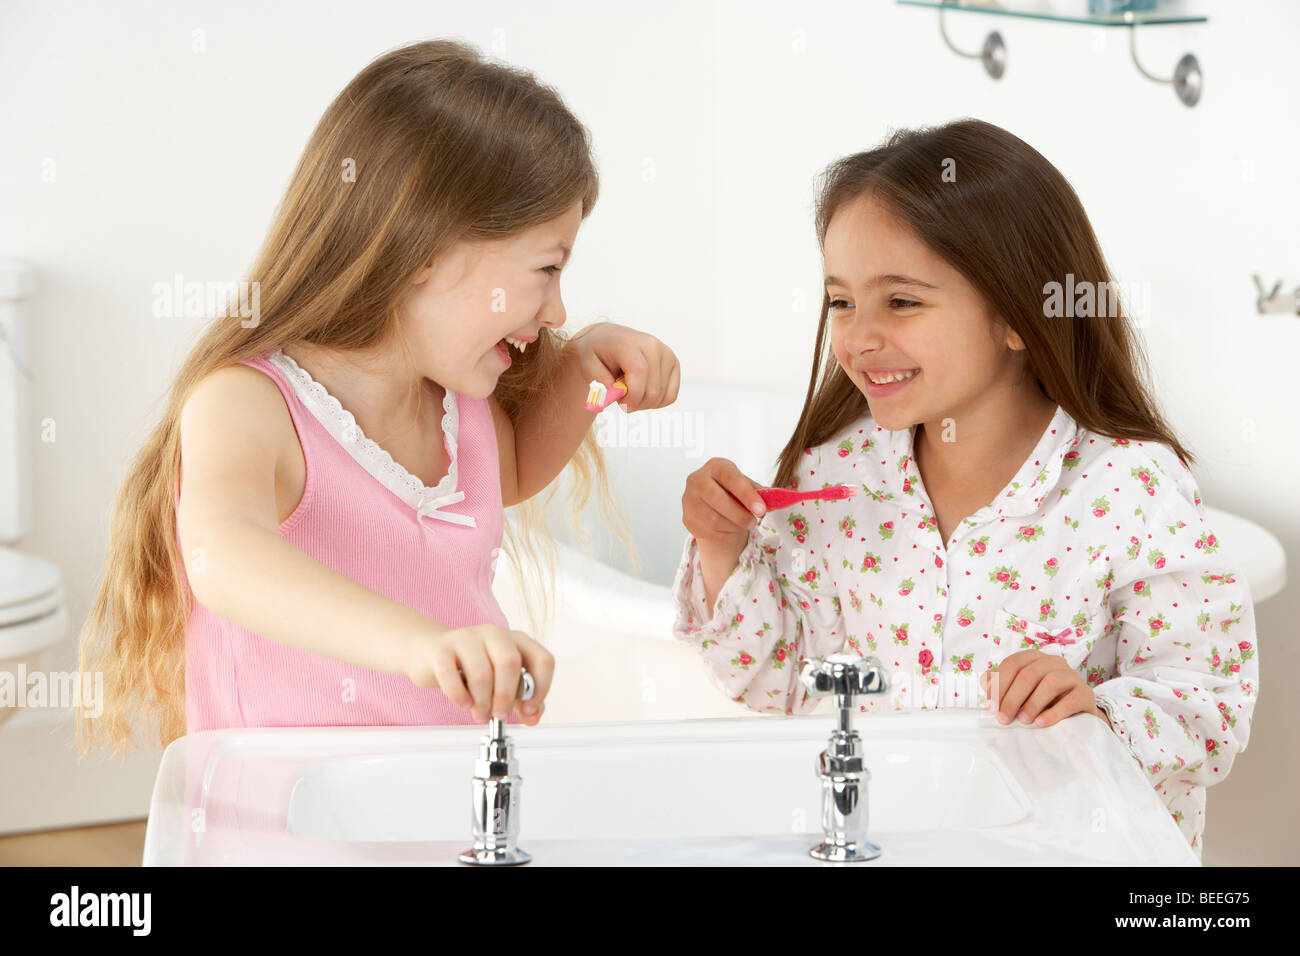 Zwei junge Mädchen Zähneputzen am Waschbecken Stockfoto